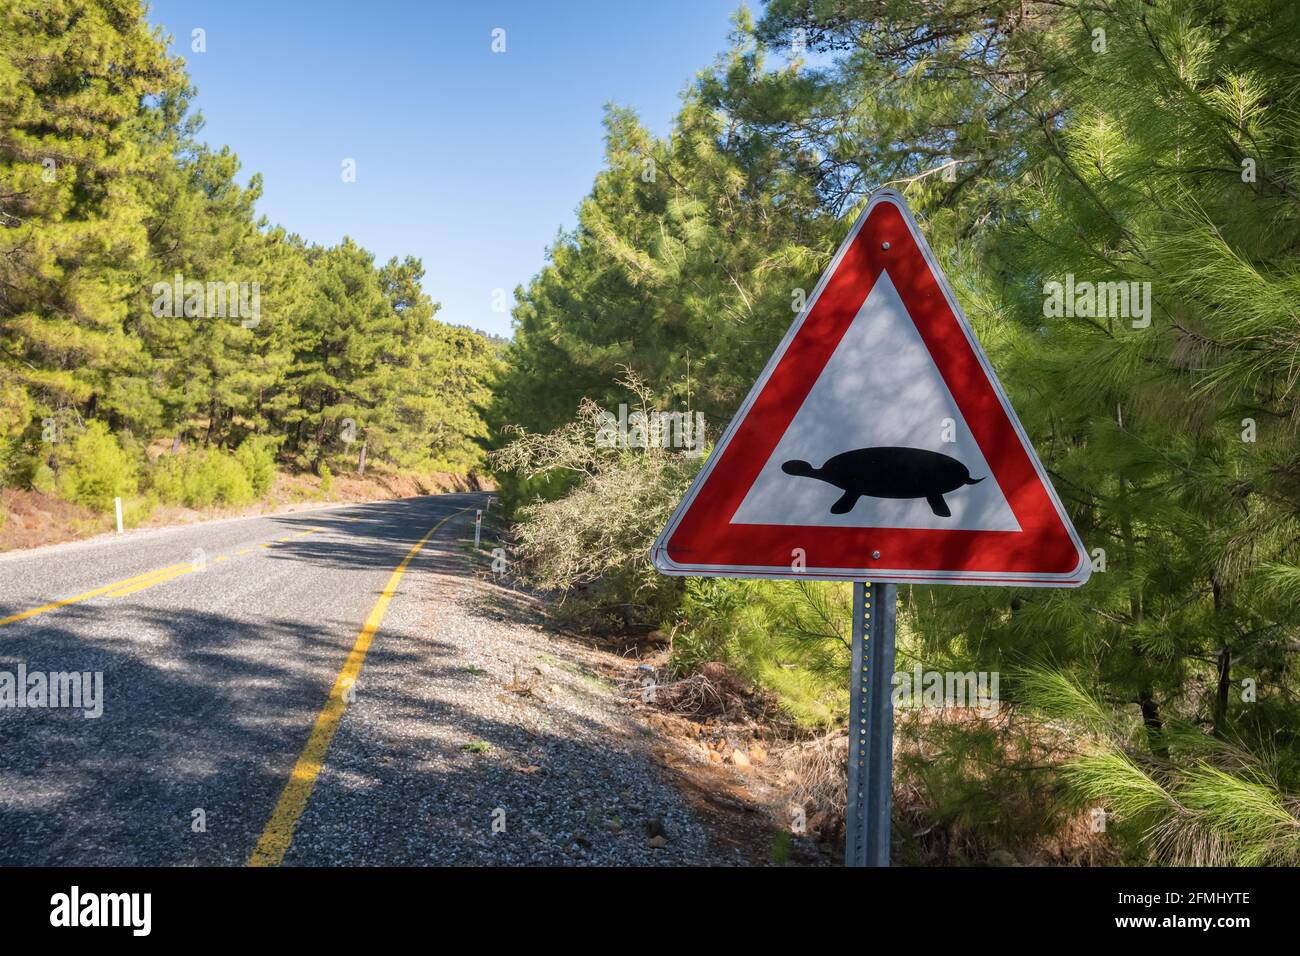 Signalisation routière indiquant que des tortues terrestres traversent la route Turquie Banque D'Images